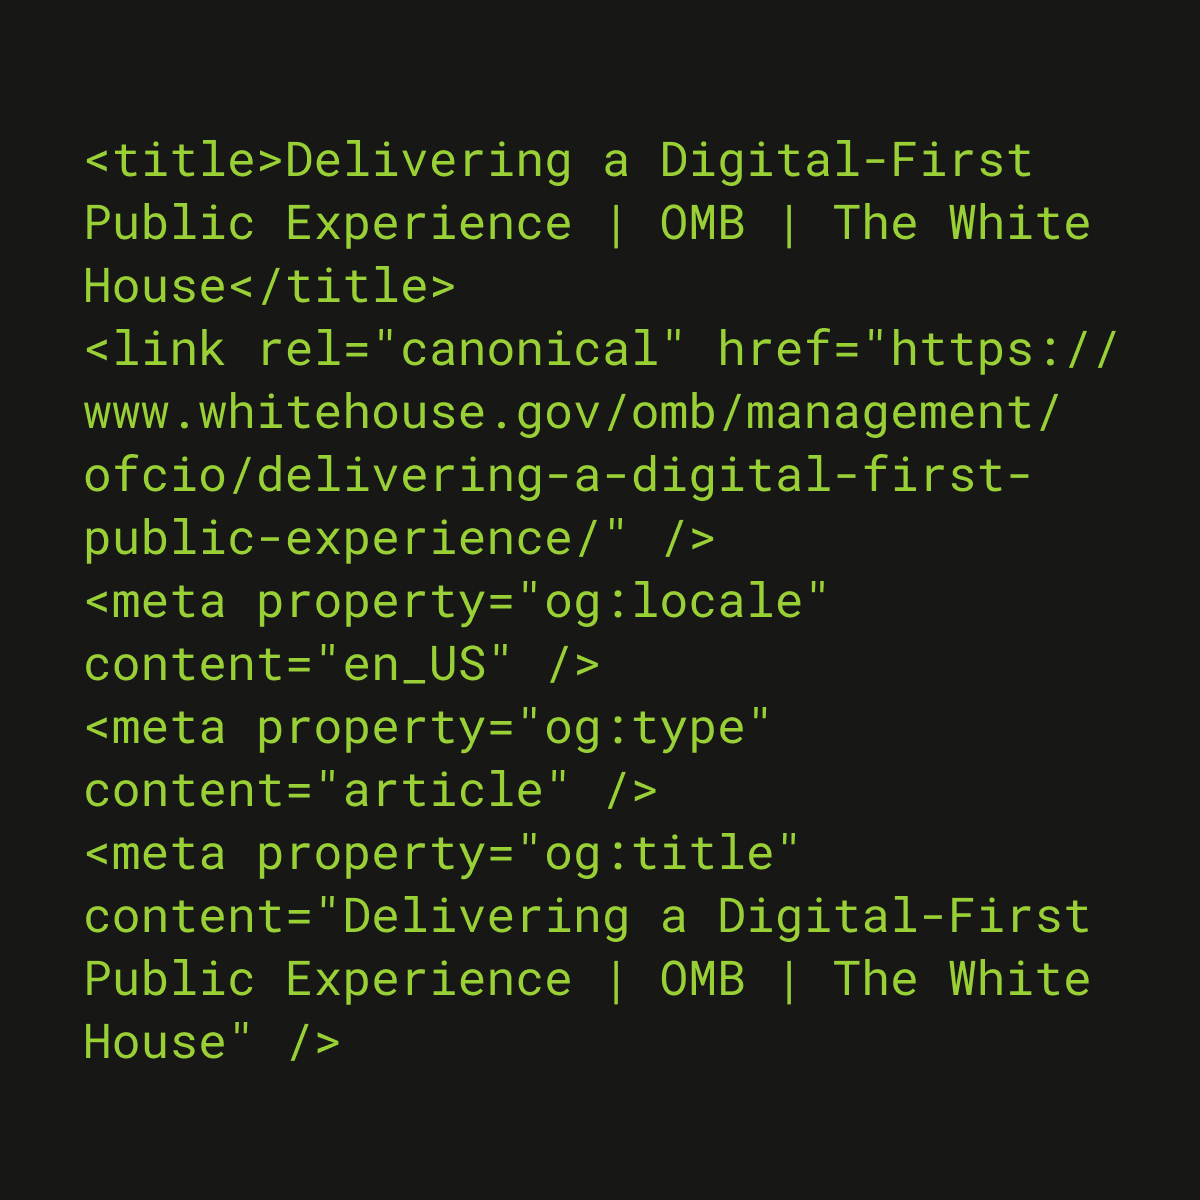 Text of whitehouse.gov metadata